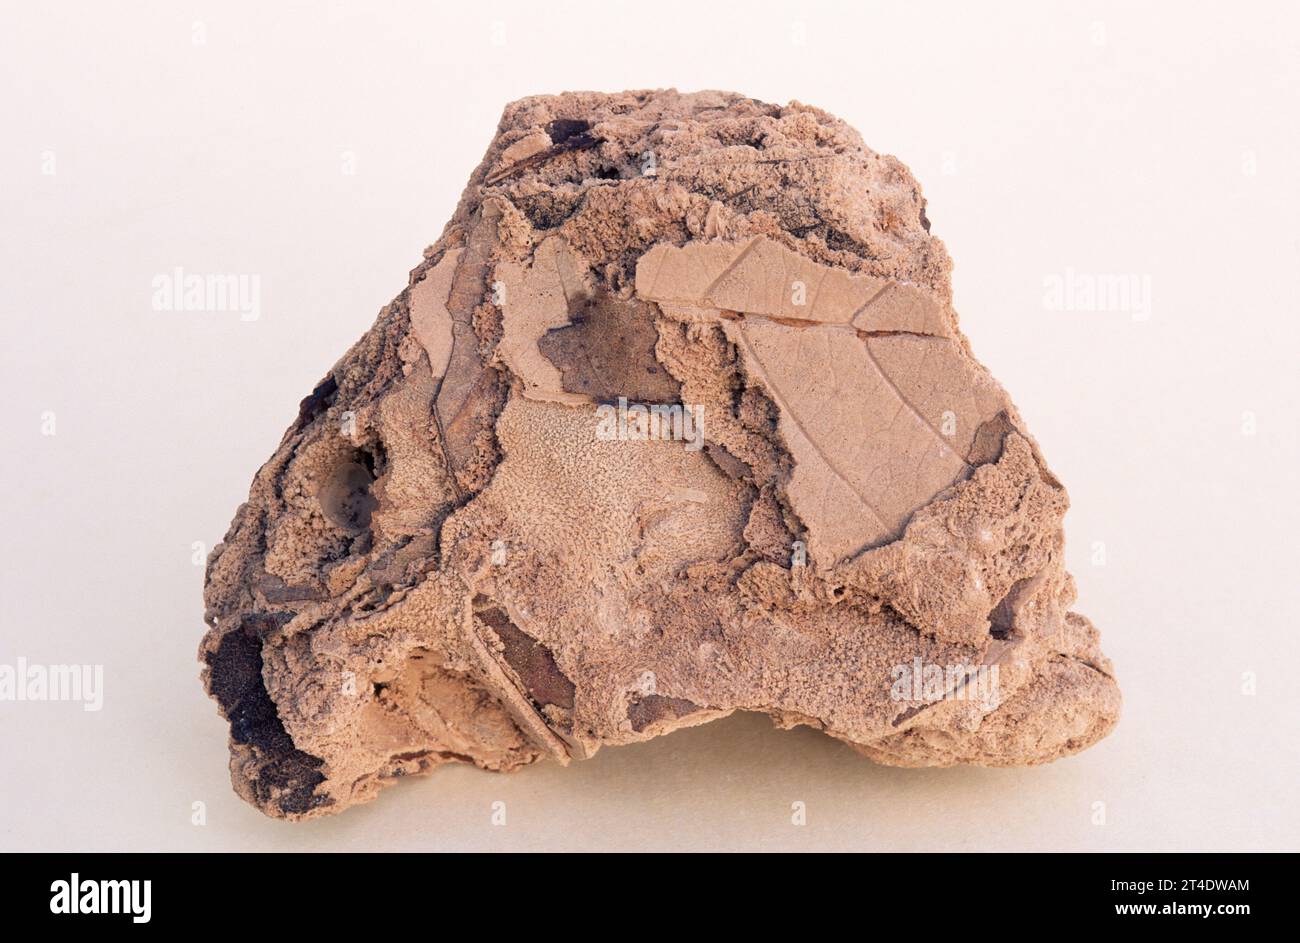 Tuffstein ist ein Sedimentgestein, eine Vielzahl von porösem Kalkstein, der durch Kalziumkarbonat-Niederschlag in Süßgewässern (Seen oder Flüssen) gebildet wird. Stockfoto